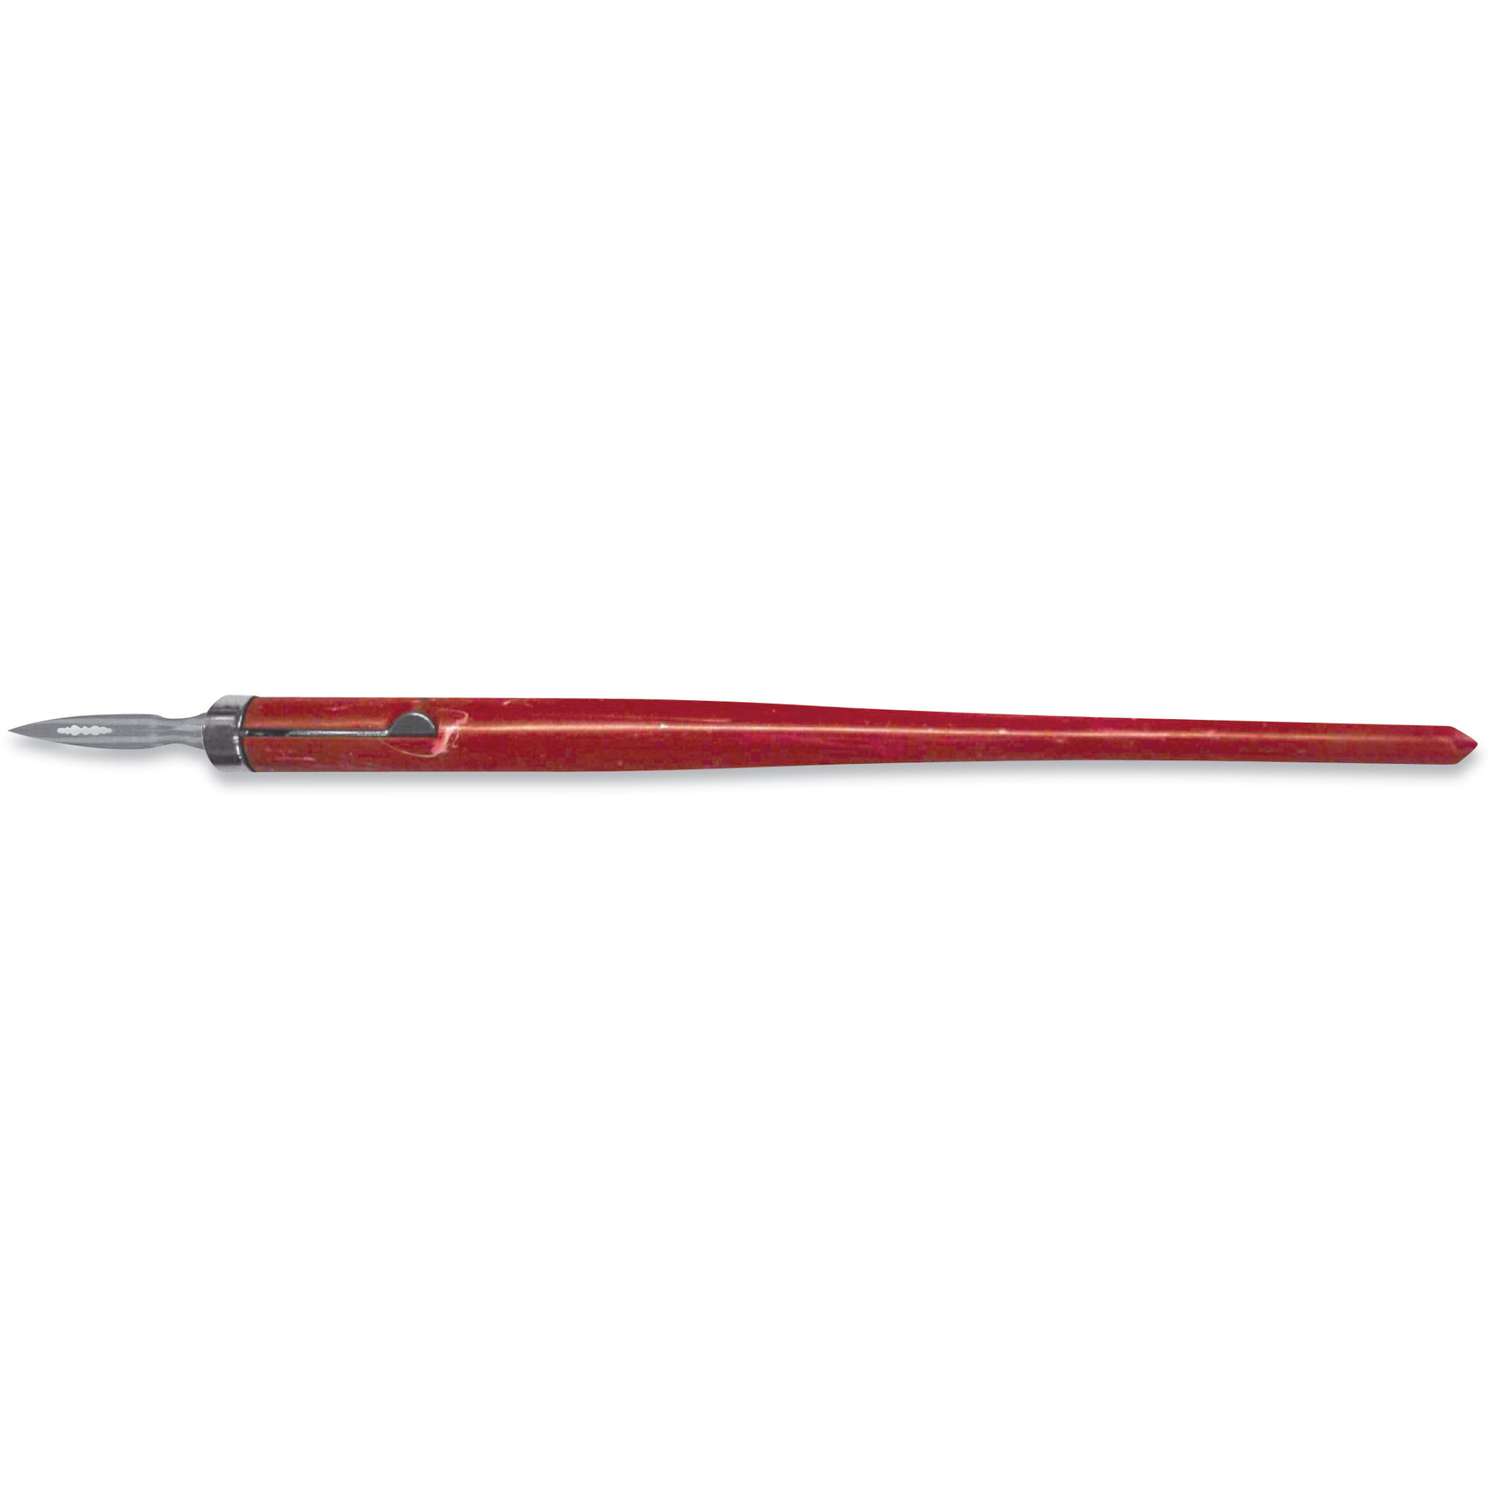 Faber Castell : Felt Tip Pen Sets